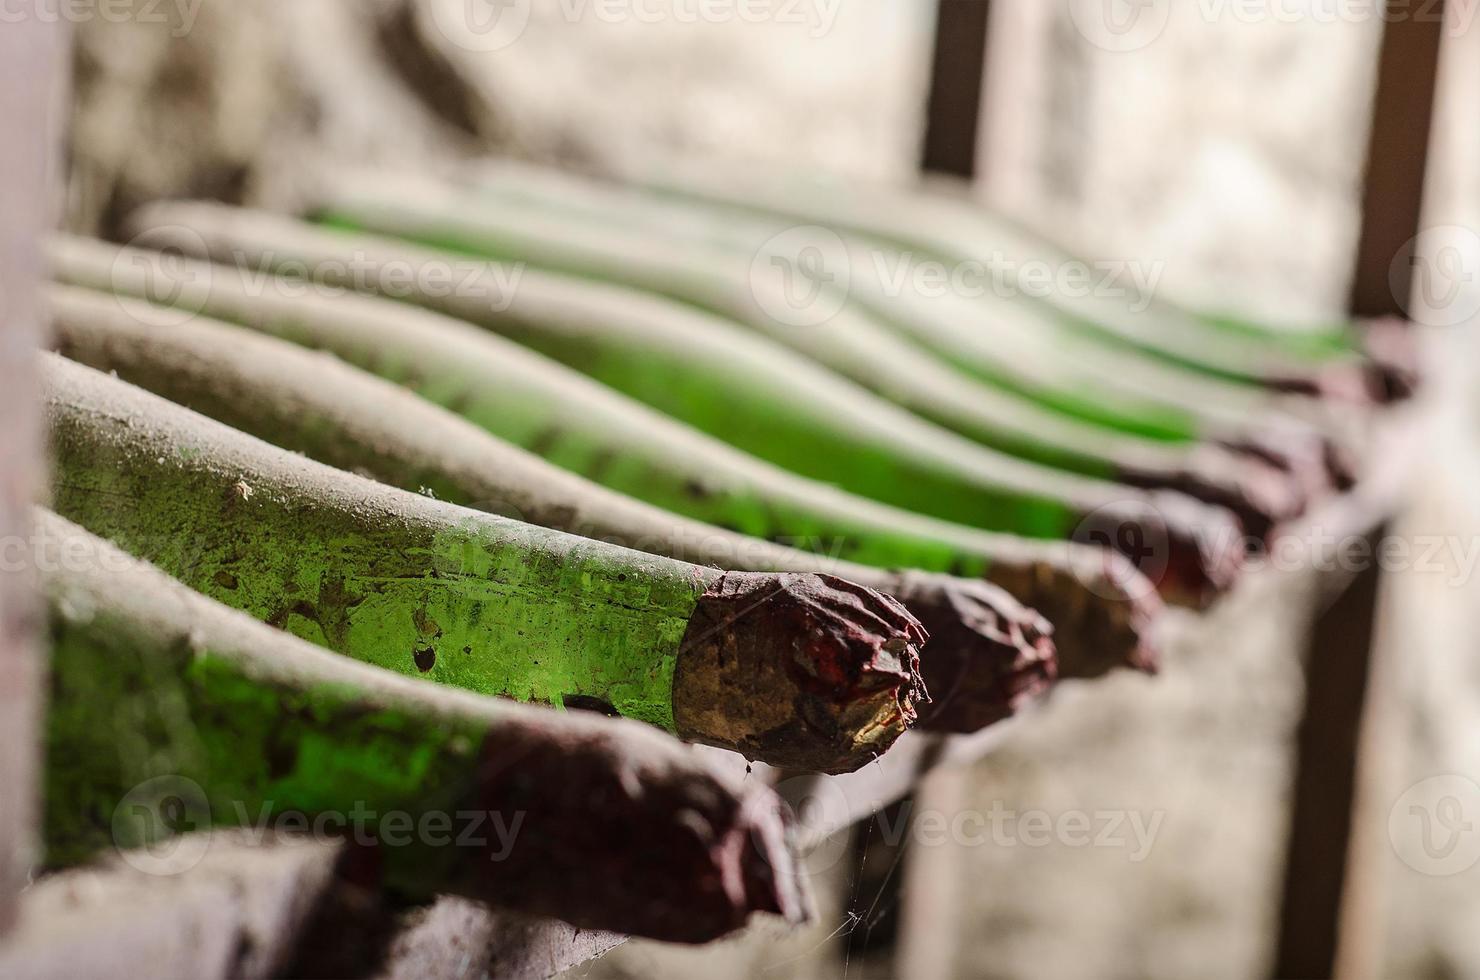 Old dusty wine bottles in cellar photo